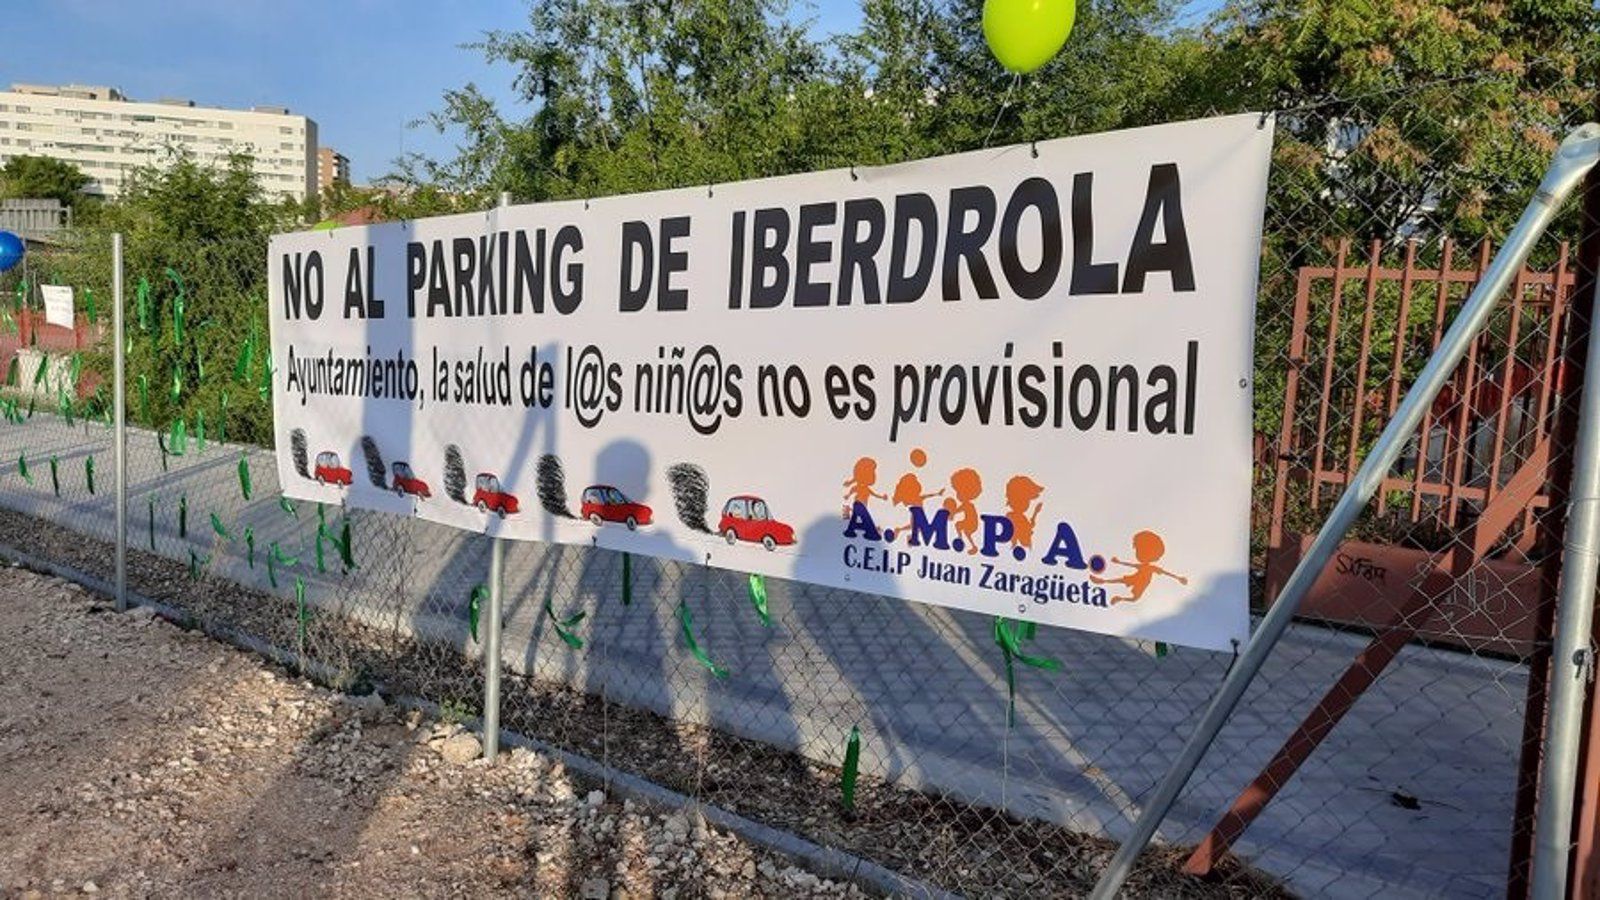 El Ayuntamiento de Madrid recupera una parcela cedida a Iberdrola en Hortaleza para transformarla en zona verde y deportiva